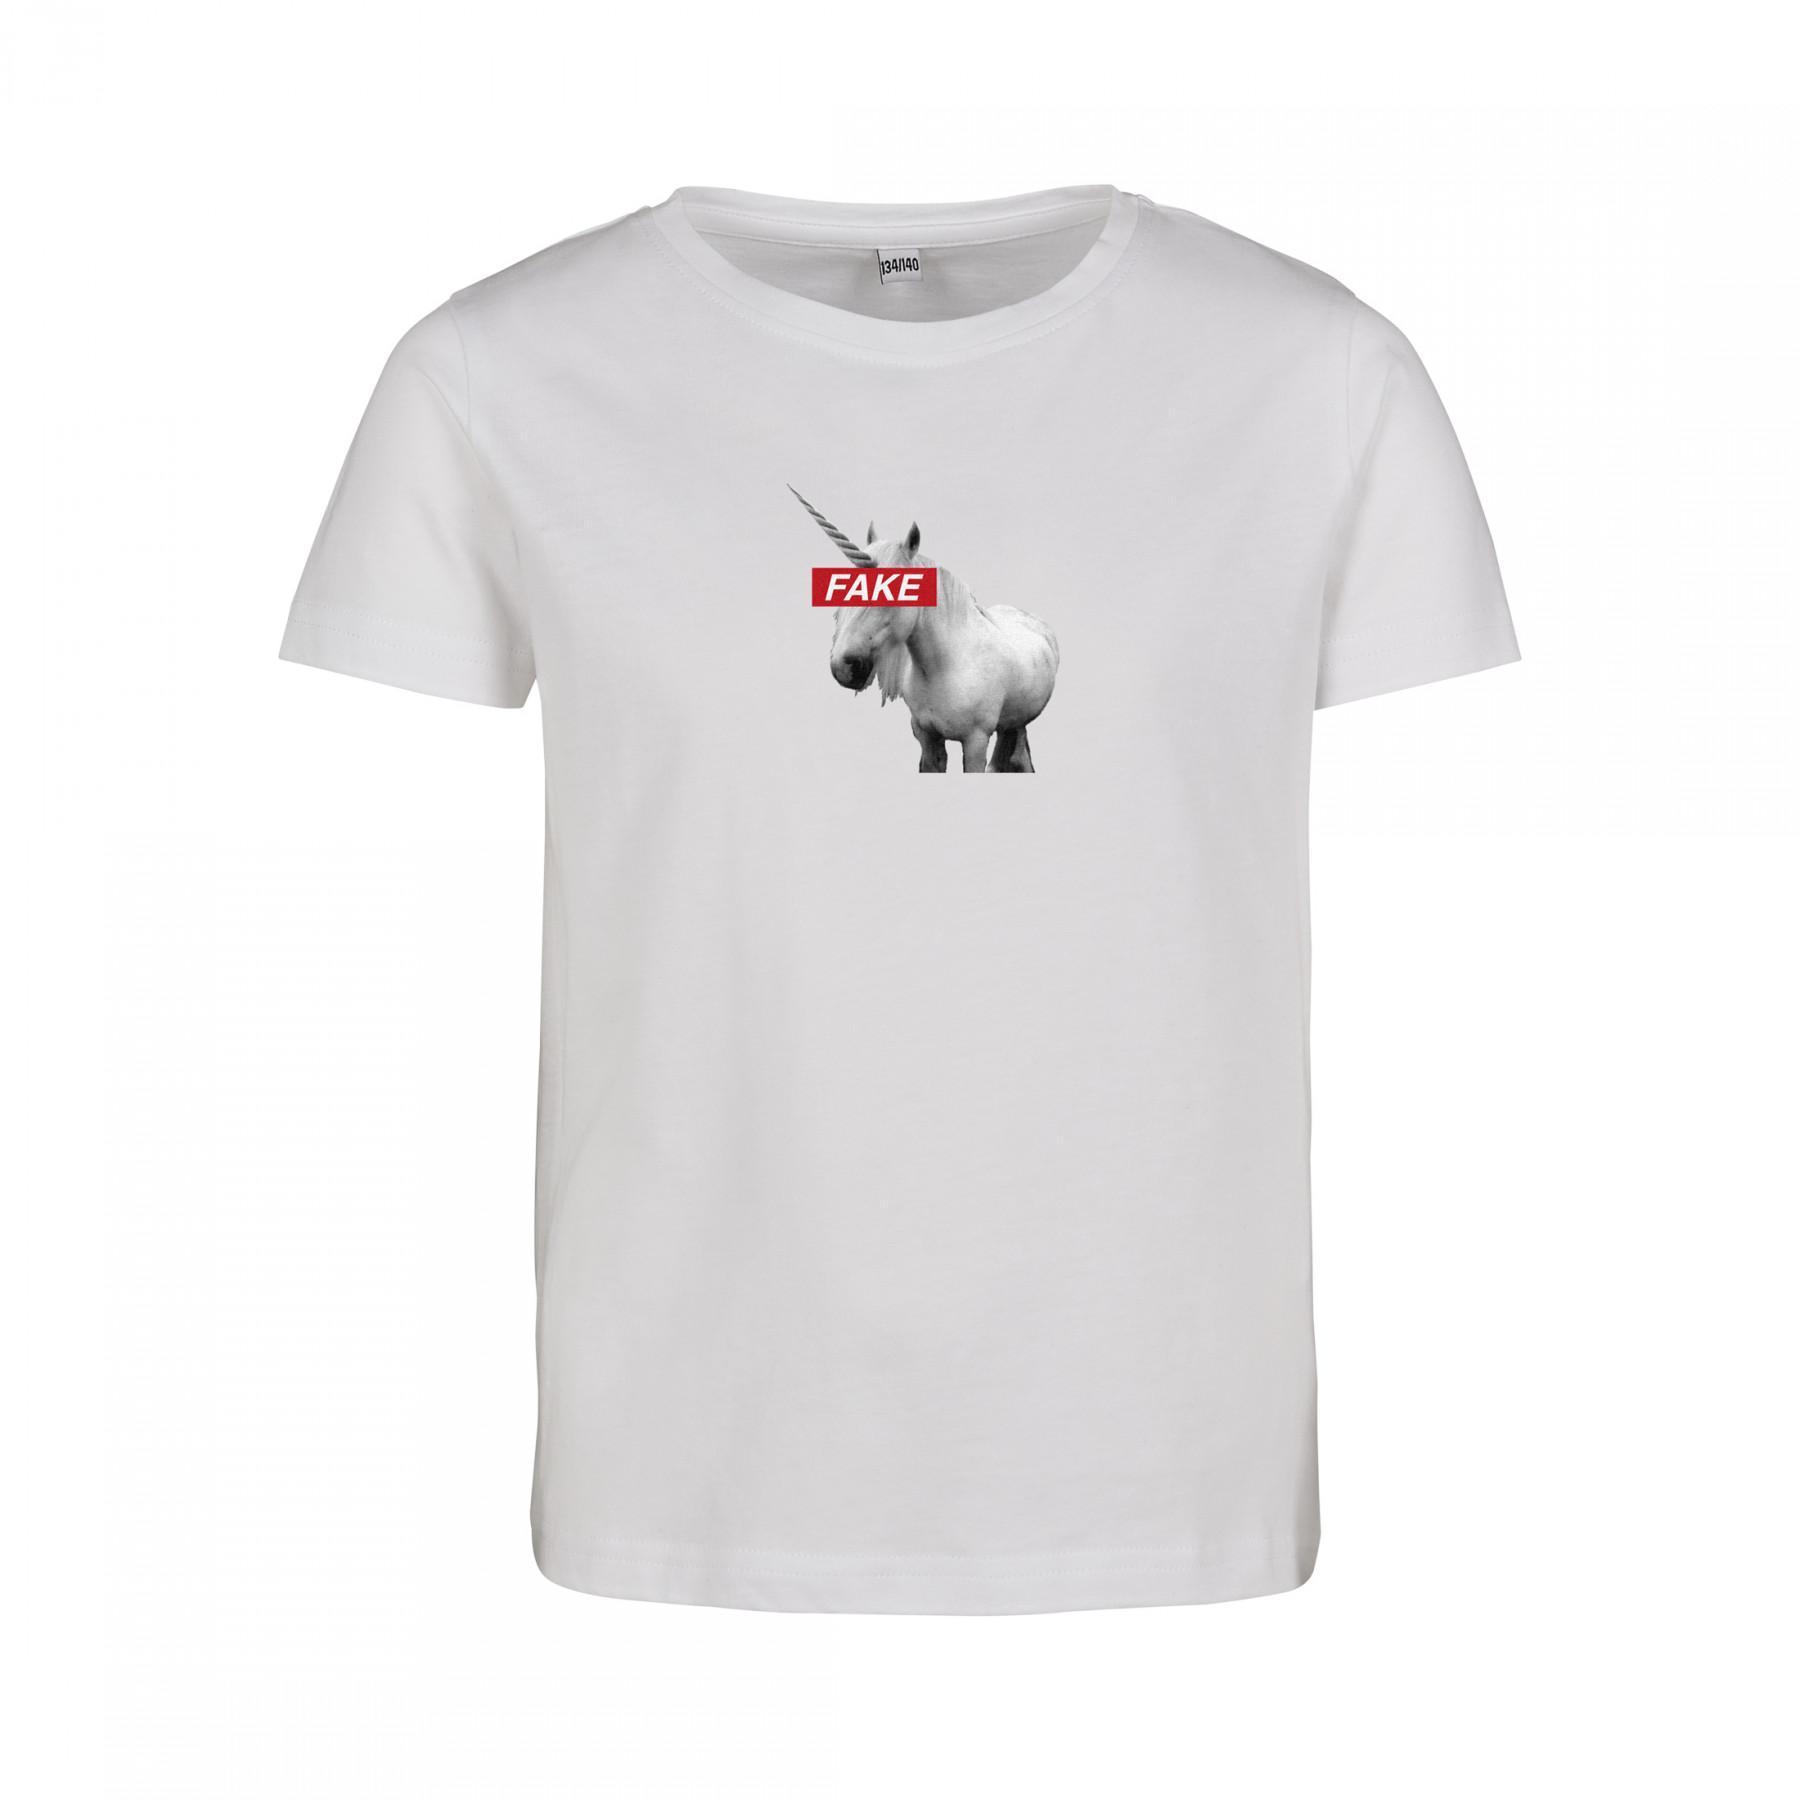 T-shirt för barn Mister Tee fake unicorn